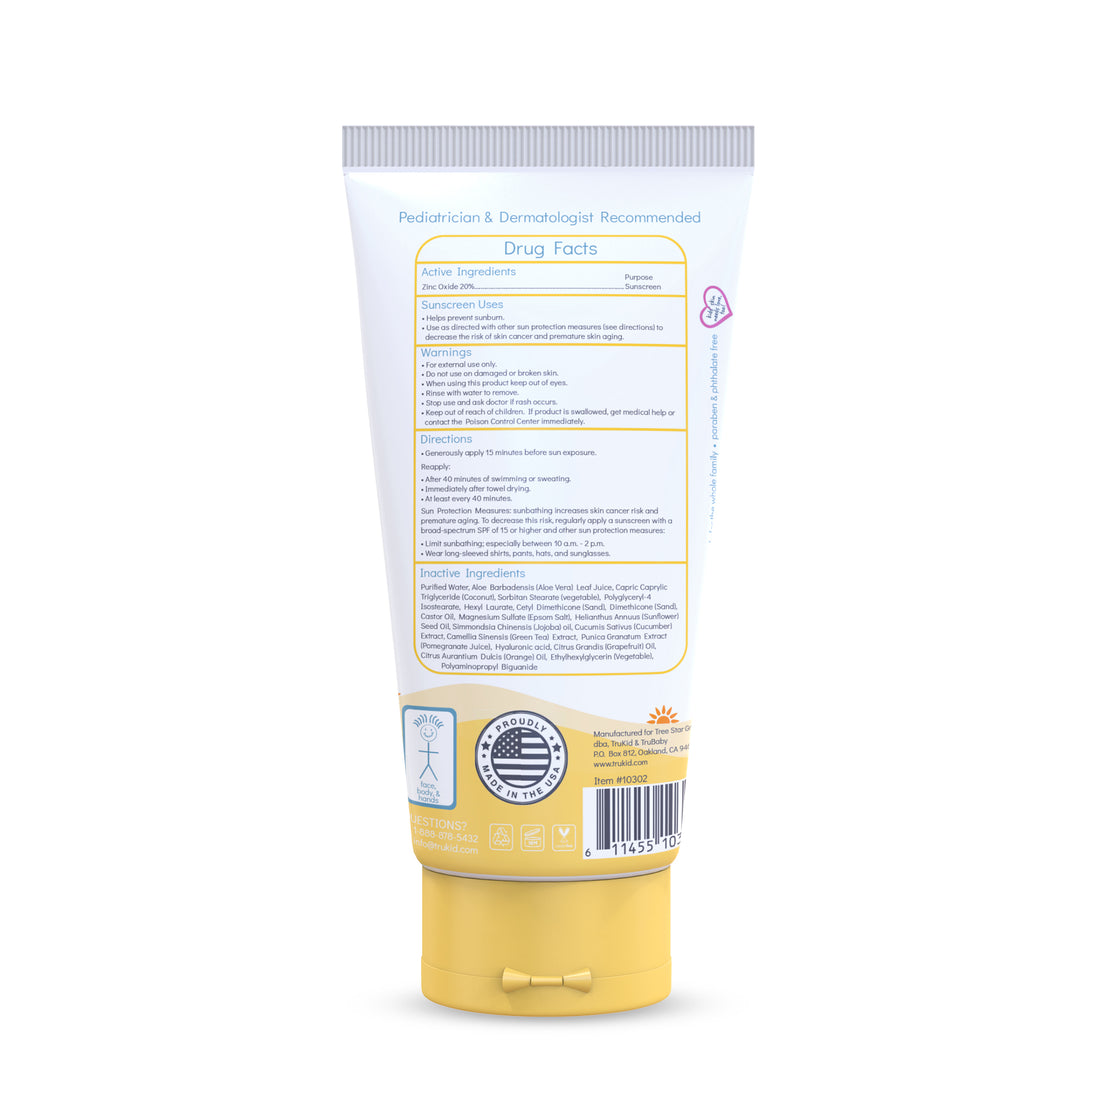 TruKid Sunny Days Daily SPF30 Sunscreen 3.4oz